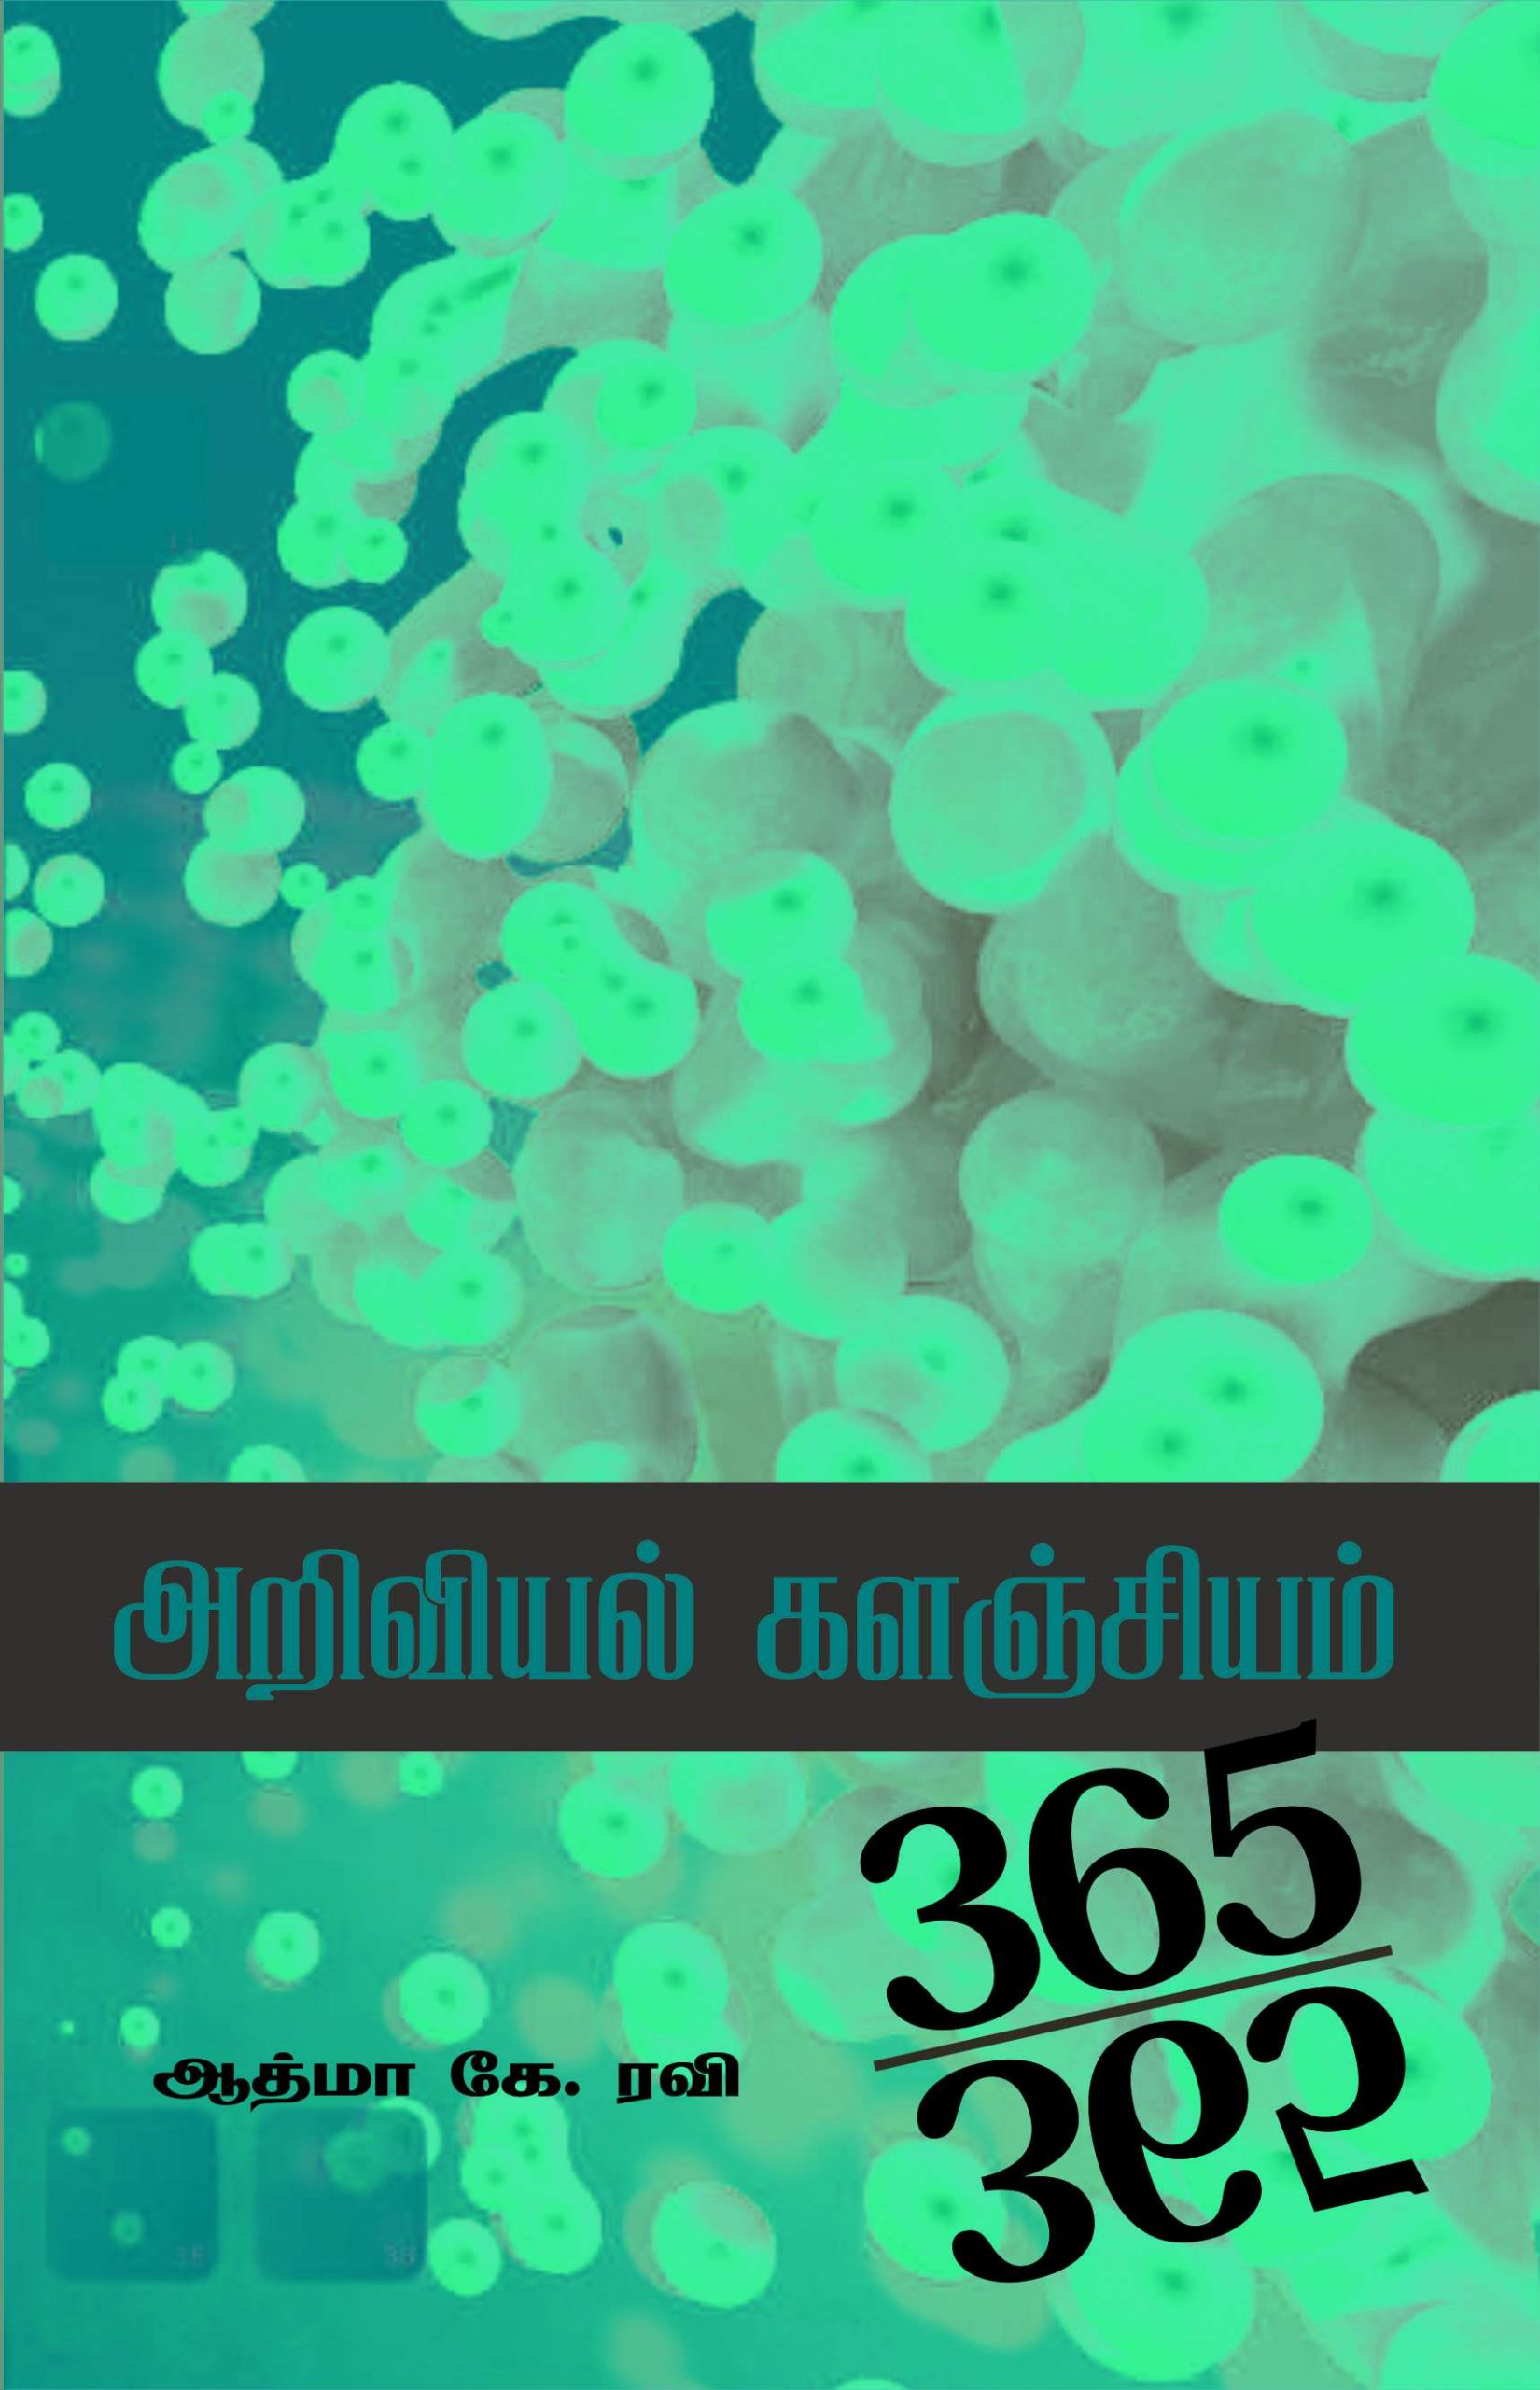 அறிவியல் களஞ்சியம்365-365